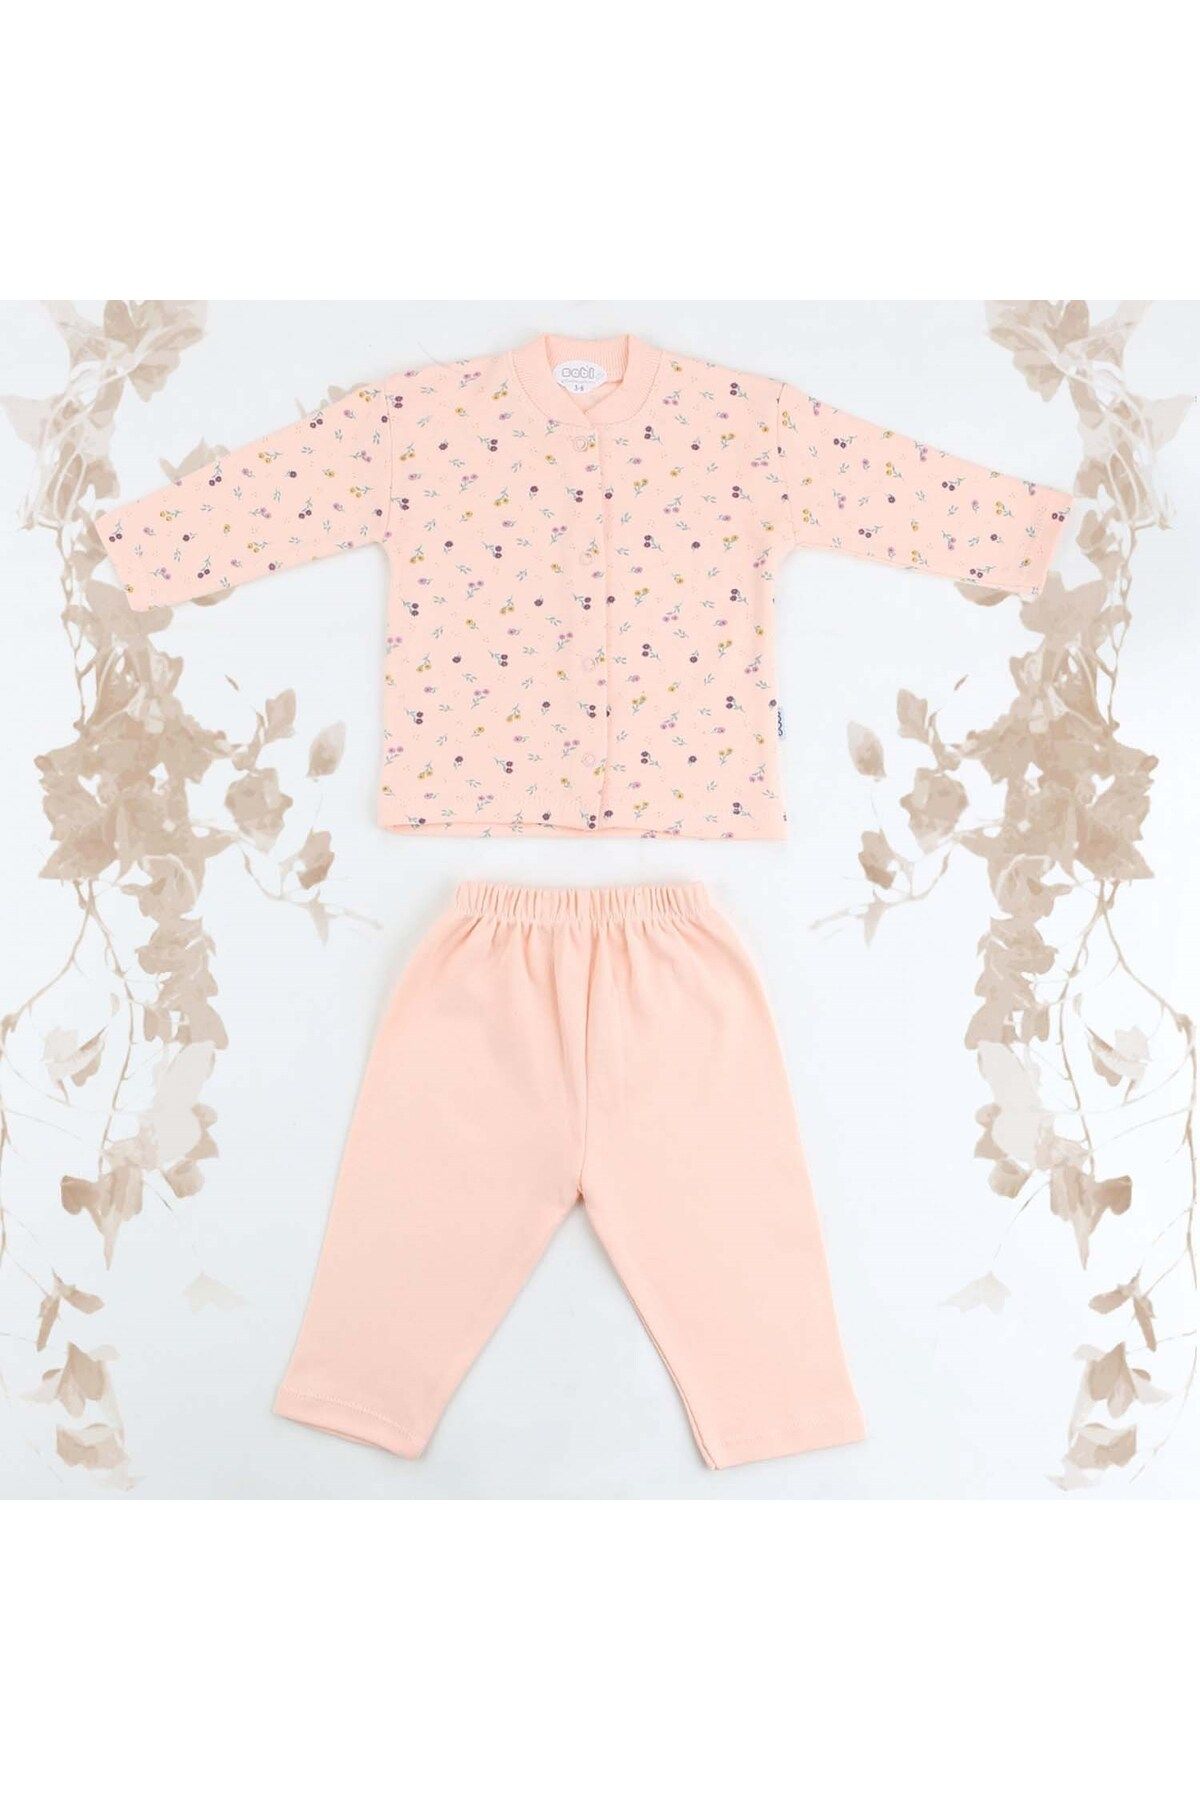 Sebi Bebe Çiçek Desenli Pijama Takımı 9103